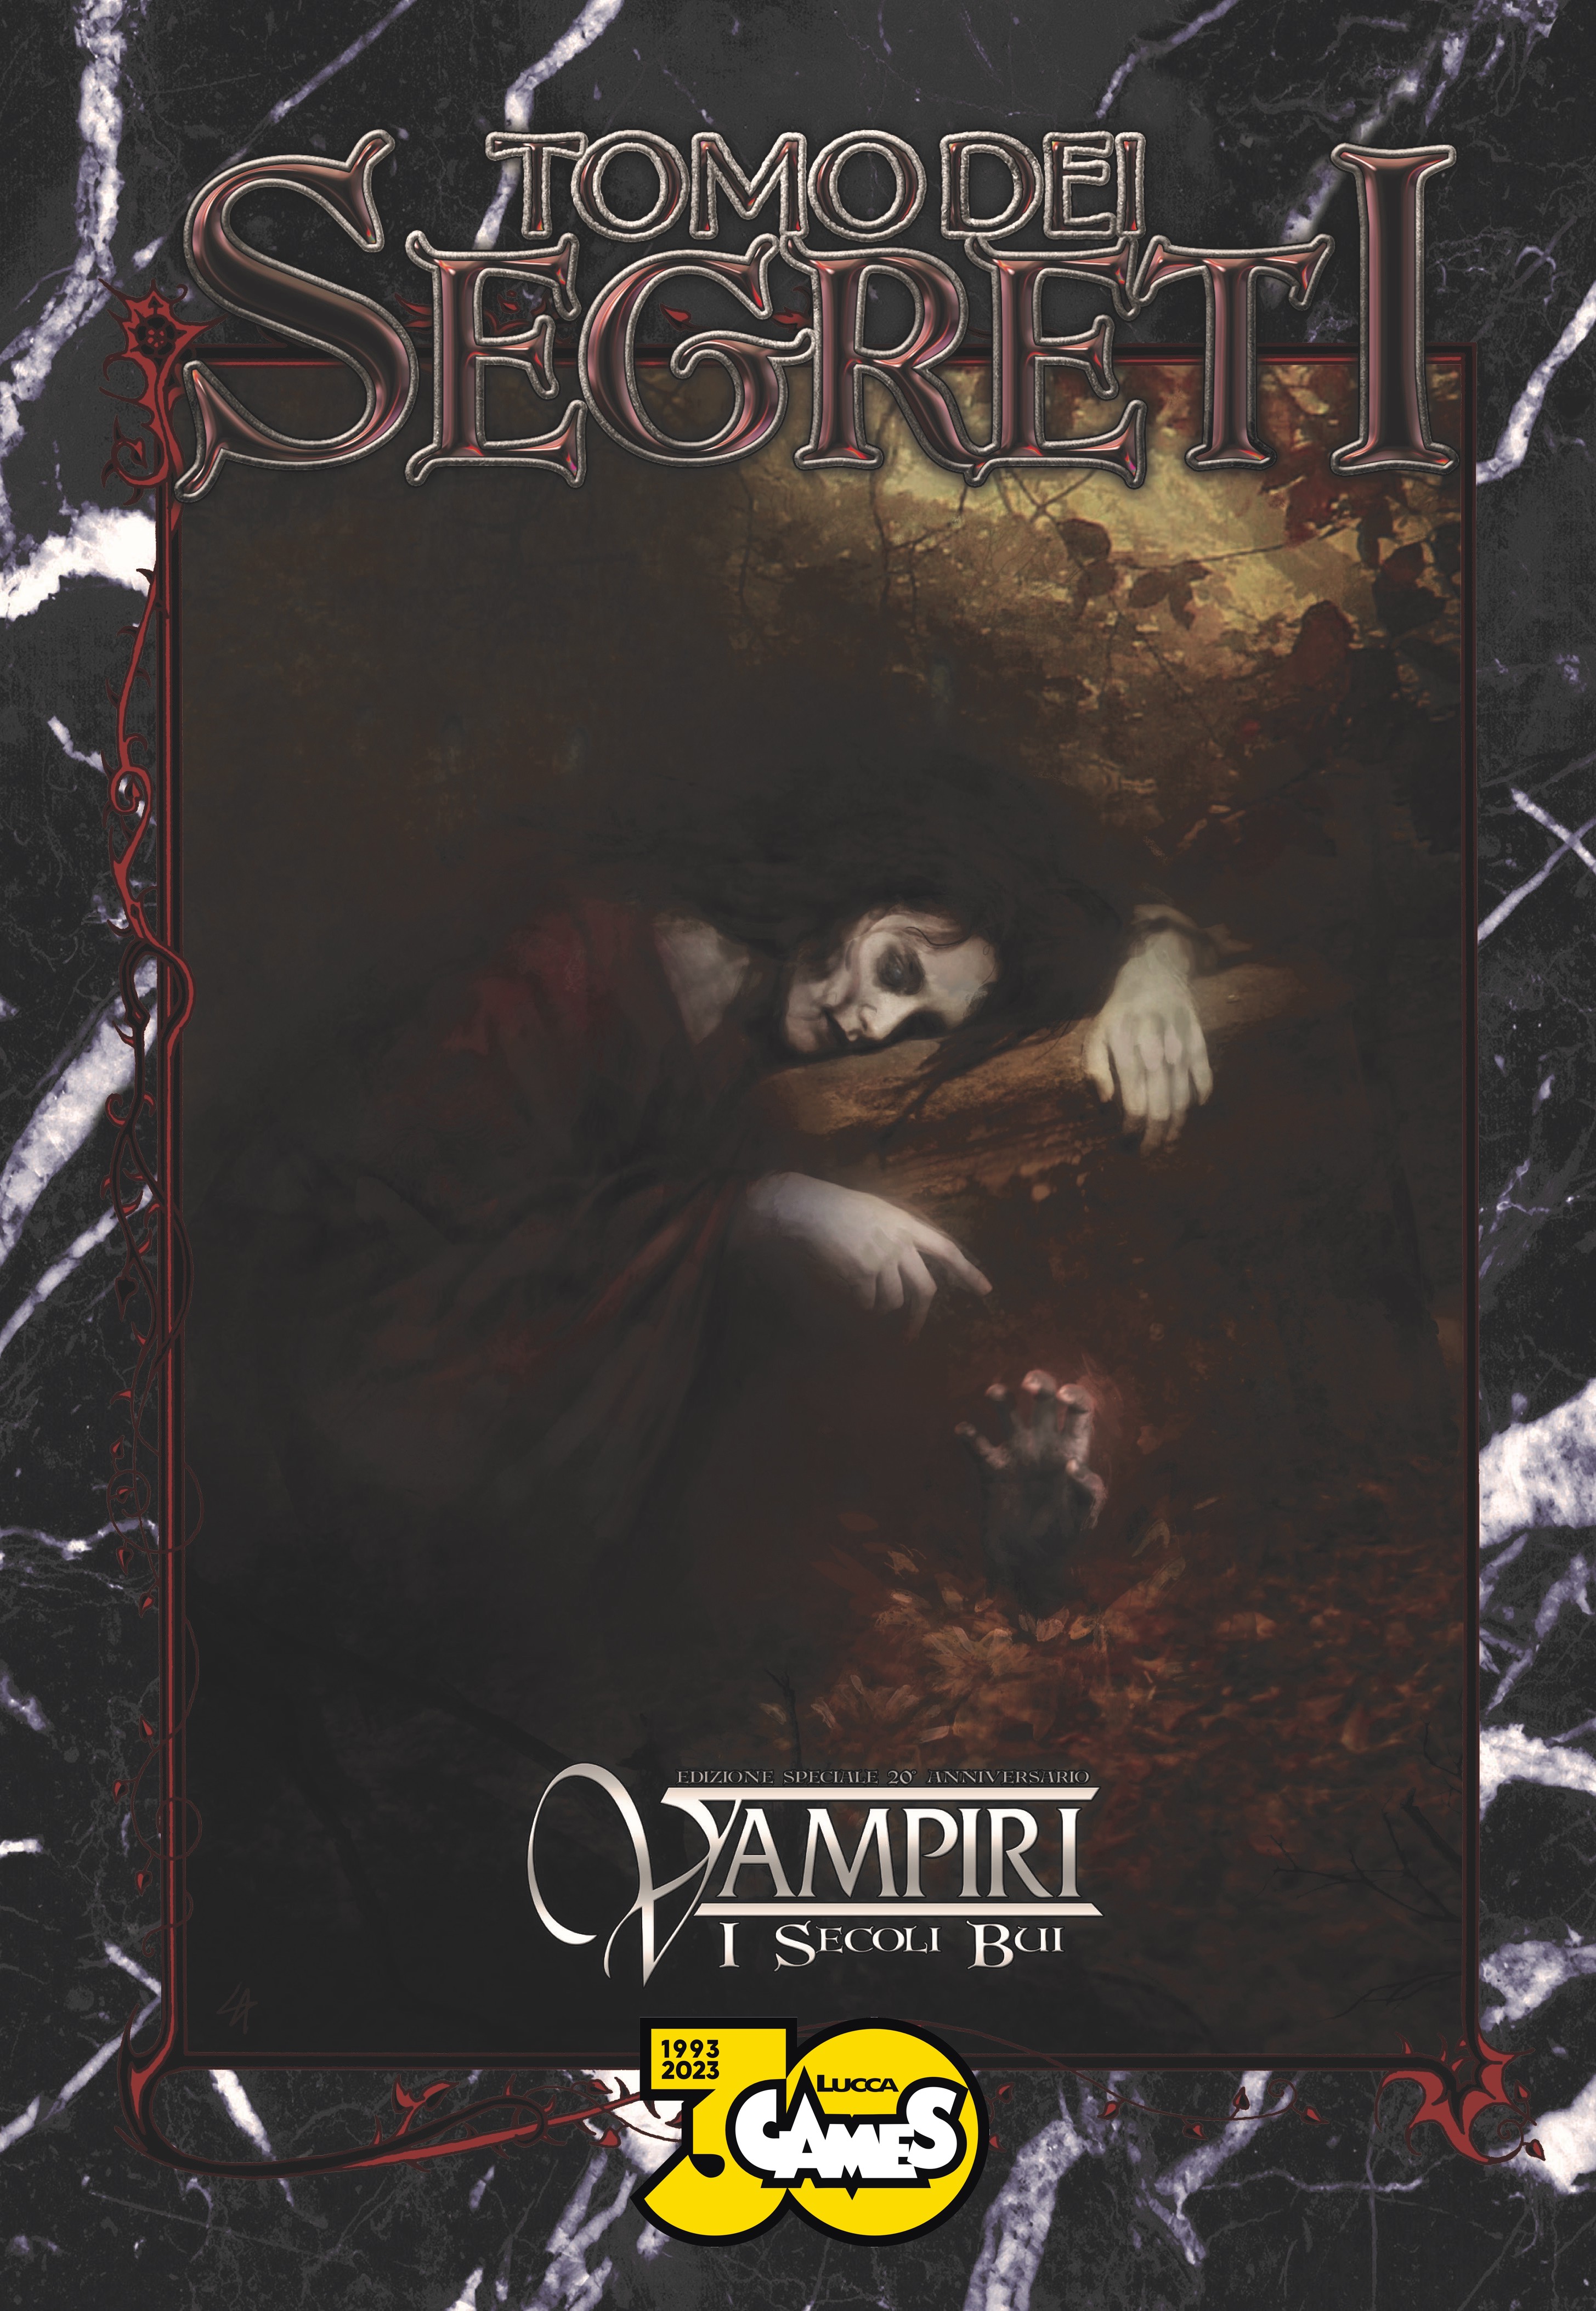 la cover del tomo dei segreti vampiri secoli bui - nerdface